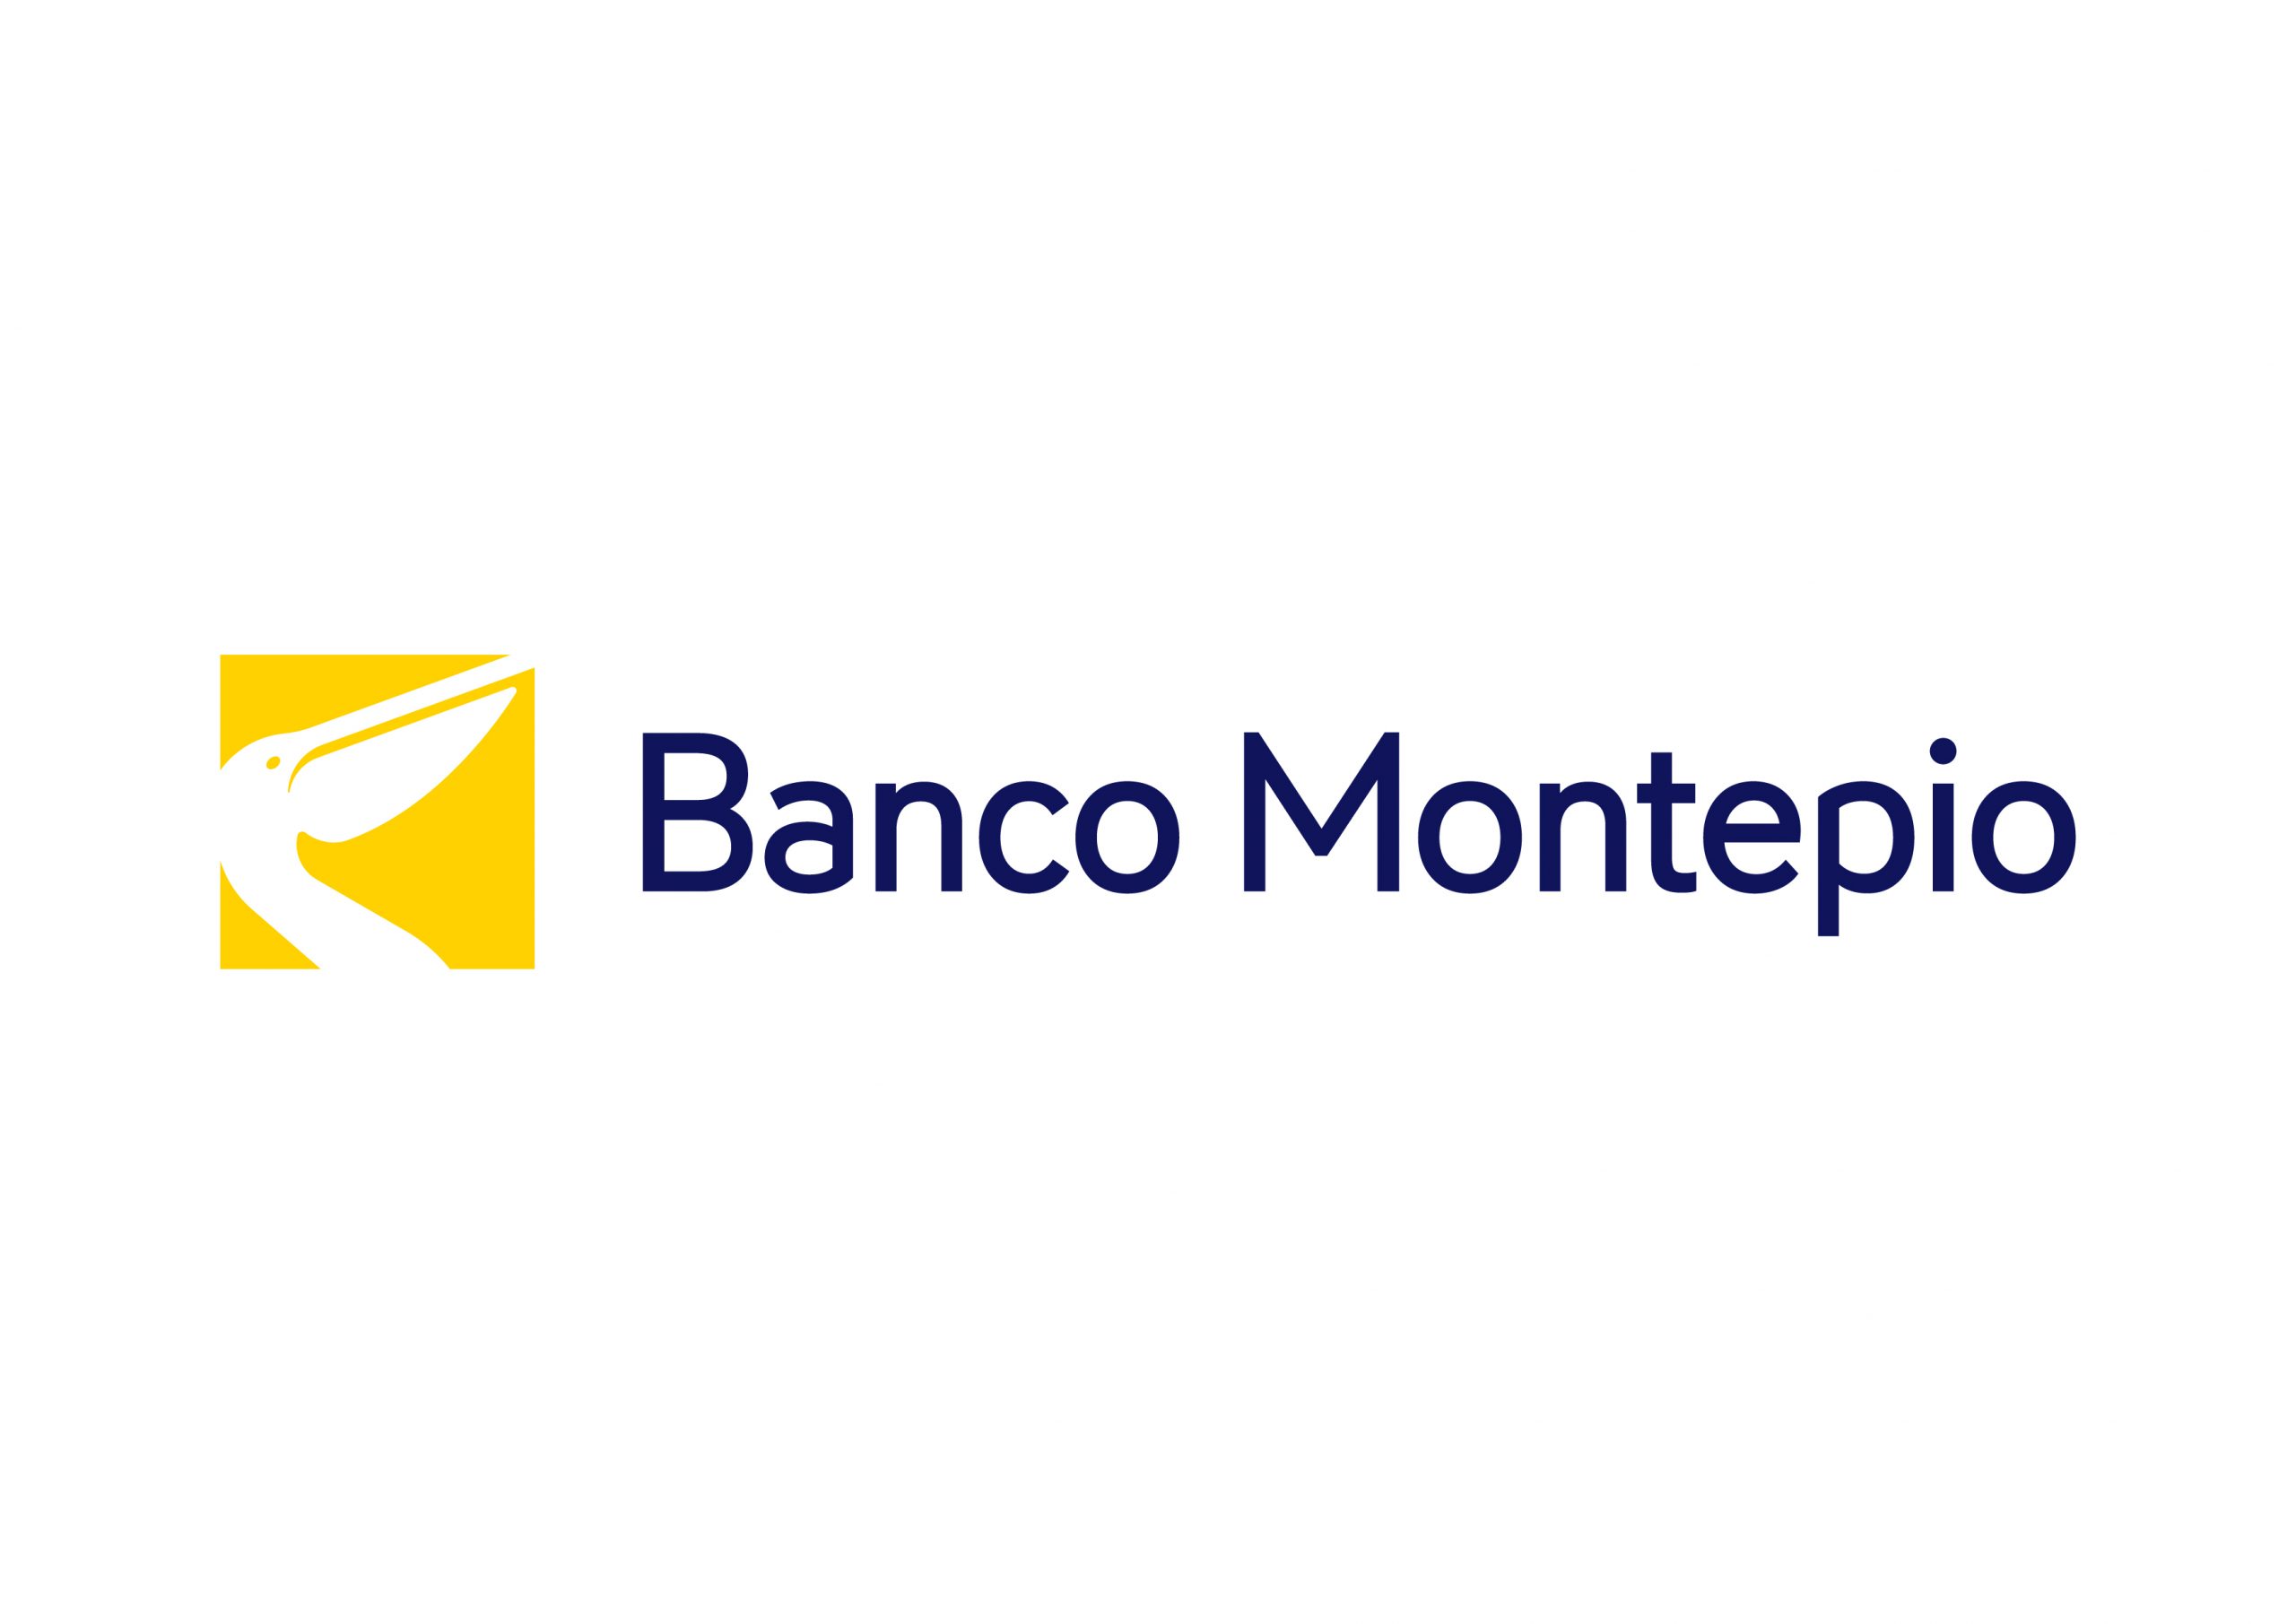 imagem com o fundo branco com o logo do Banco Montepio